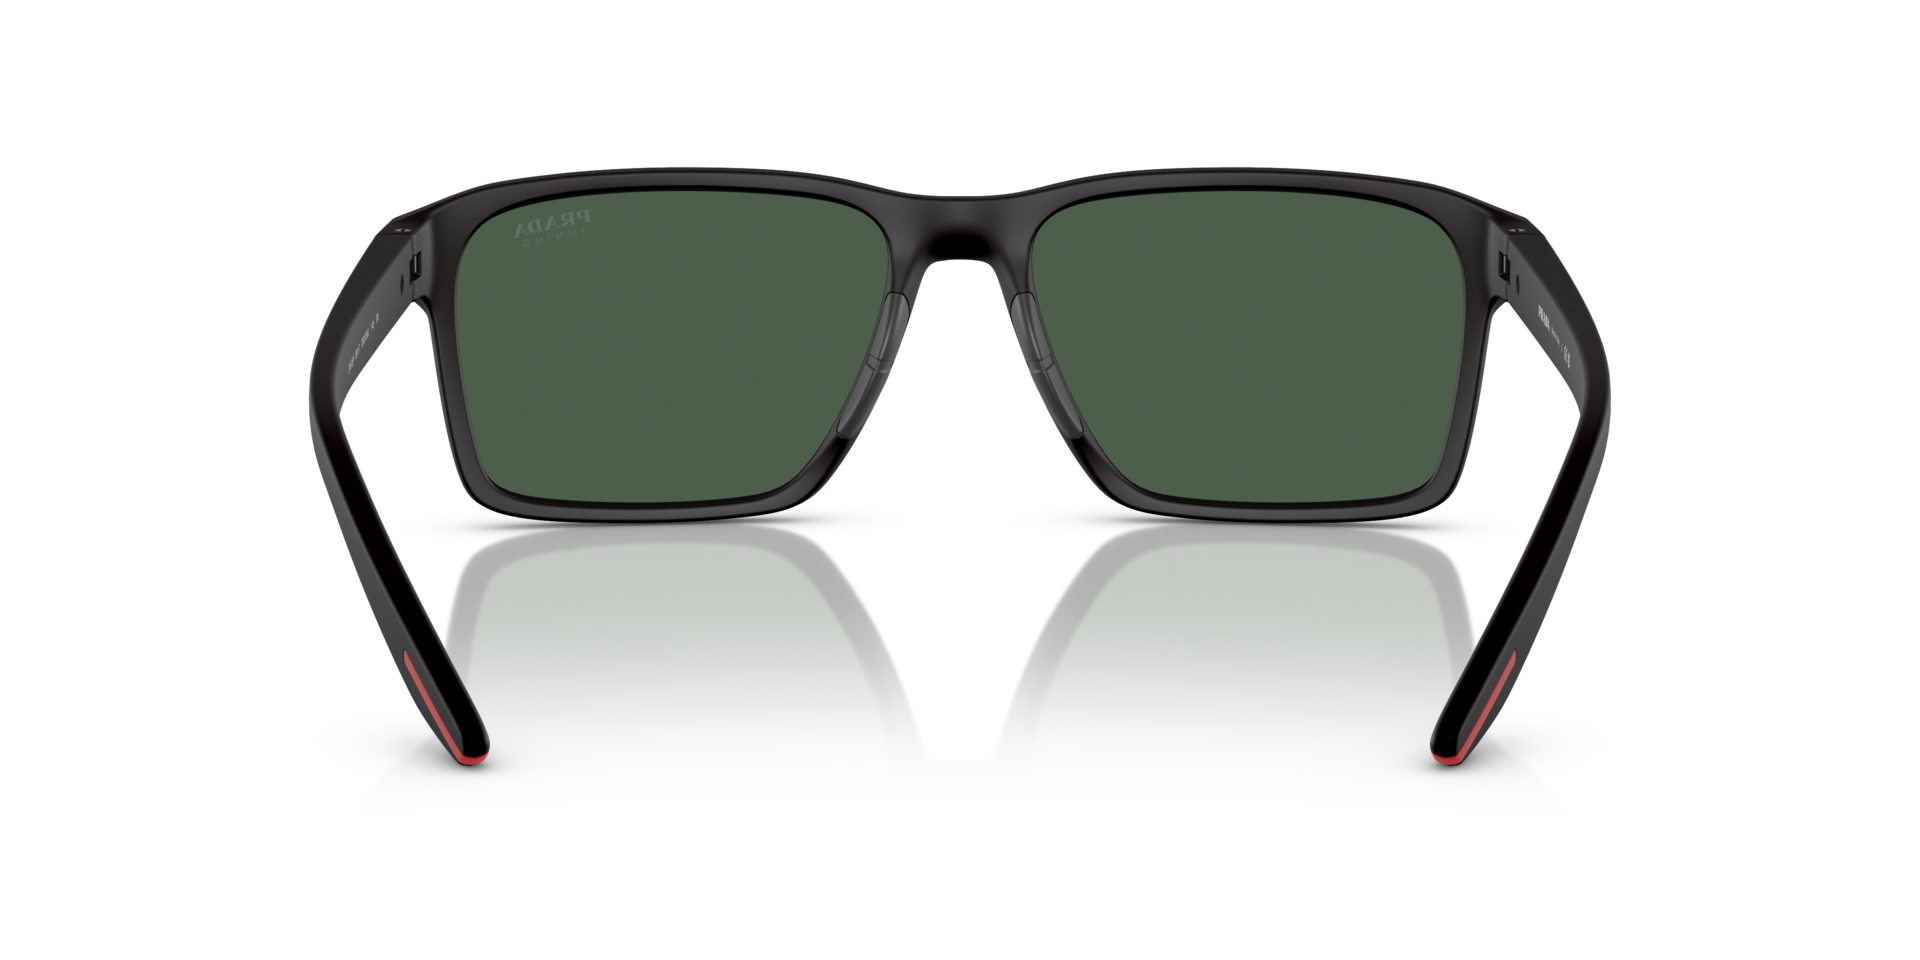 Das Bild zeigt die Sonnenbrille PS05YS DG006U von der Marke Prada Linea Rossa in schwarz.